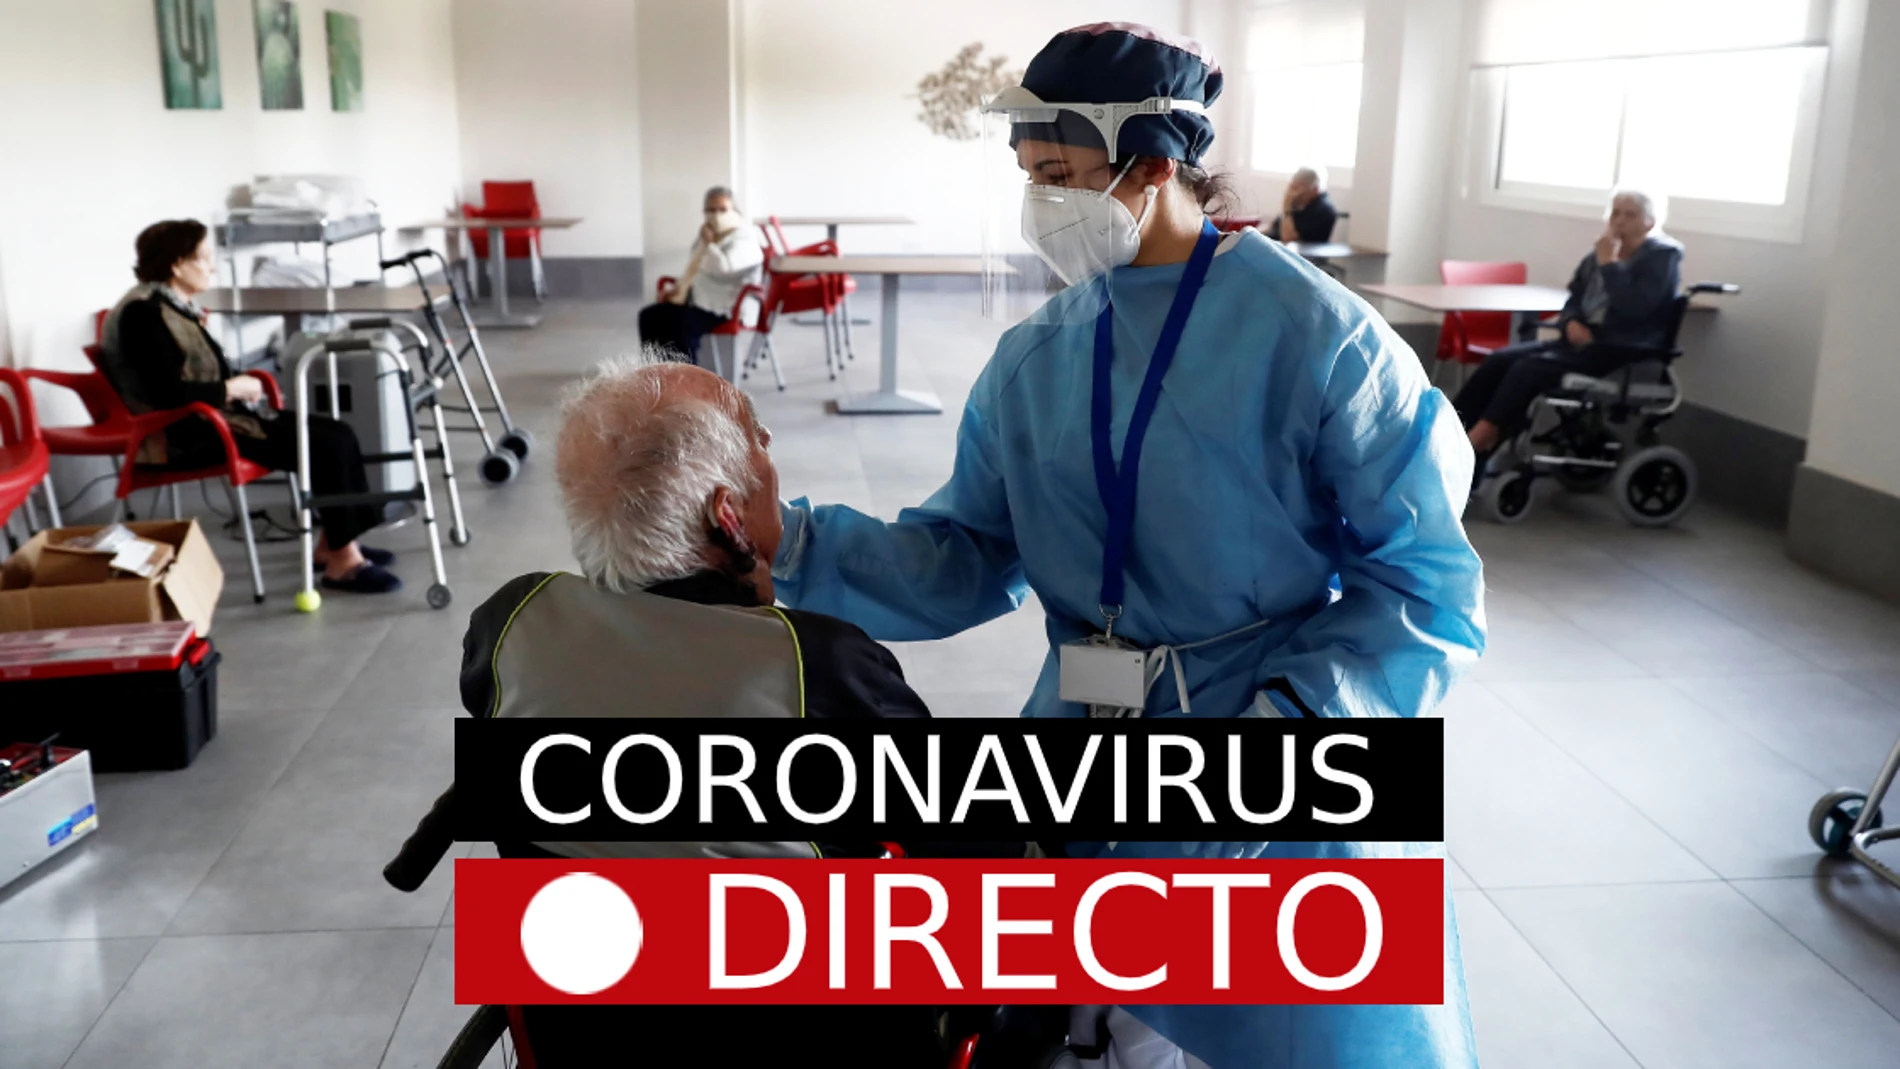 Última hora del COVID-19 en directo: la incidencia de coronavirus se dispara tras Nochevieja